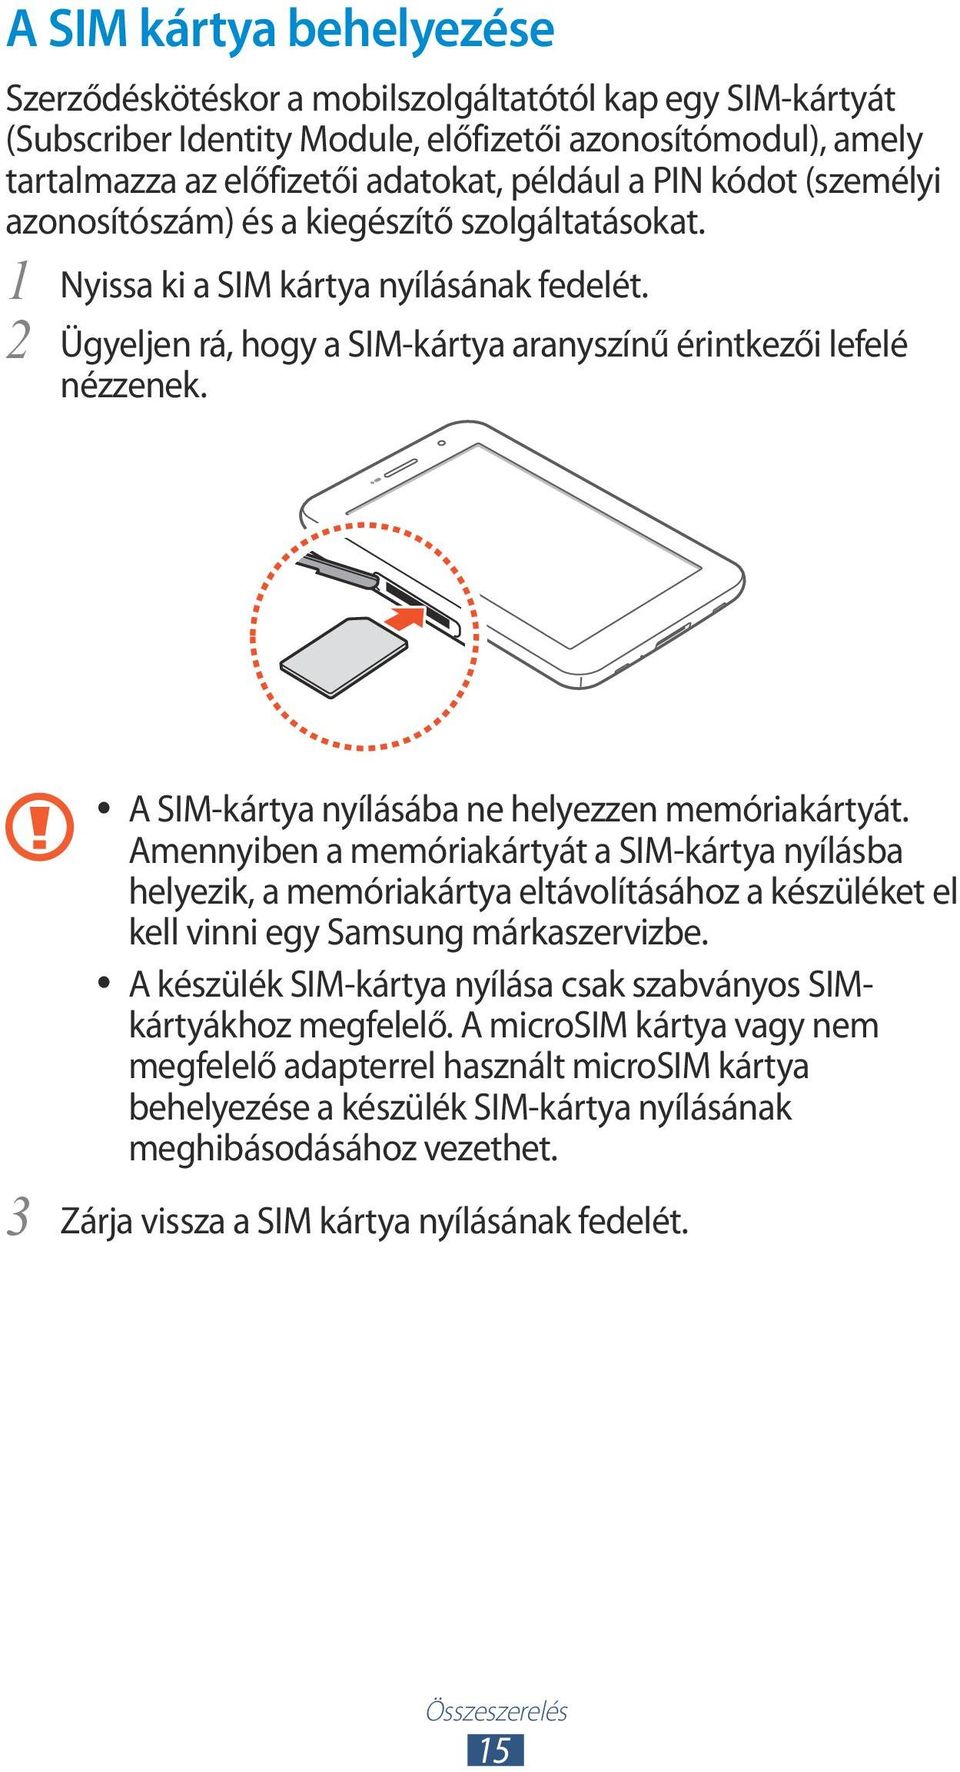 3 A SIM-kártya nyílásába ne helyezzen memóriakártyát. Amennyiben a memóriakártyát a SIM-kártya nyílásba helyezik, a memóriakártya eltávolításához a készüléket el kell vinni egy Samsung márkaszervizbe.